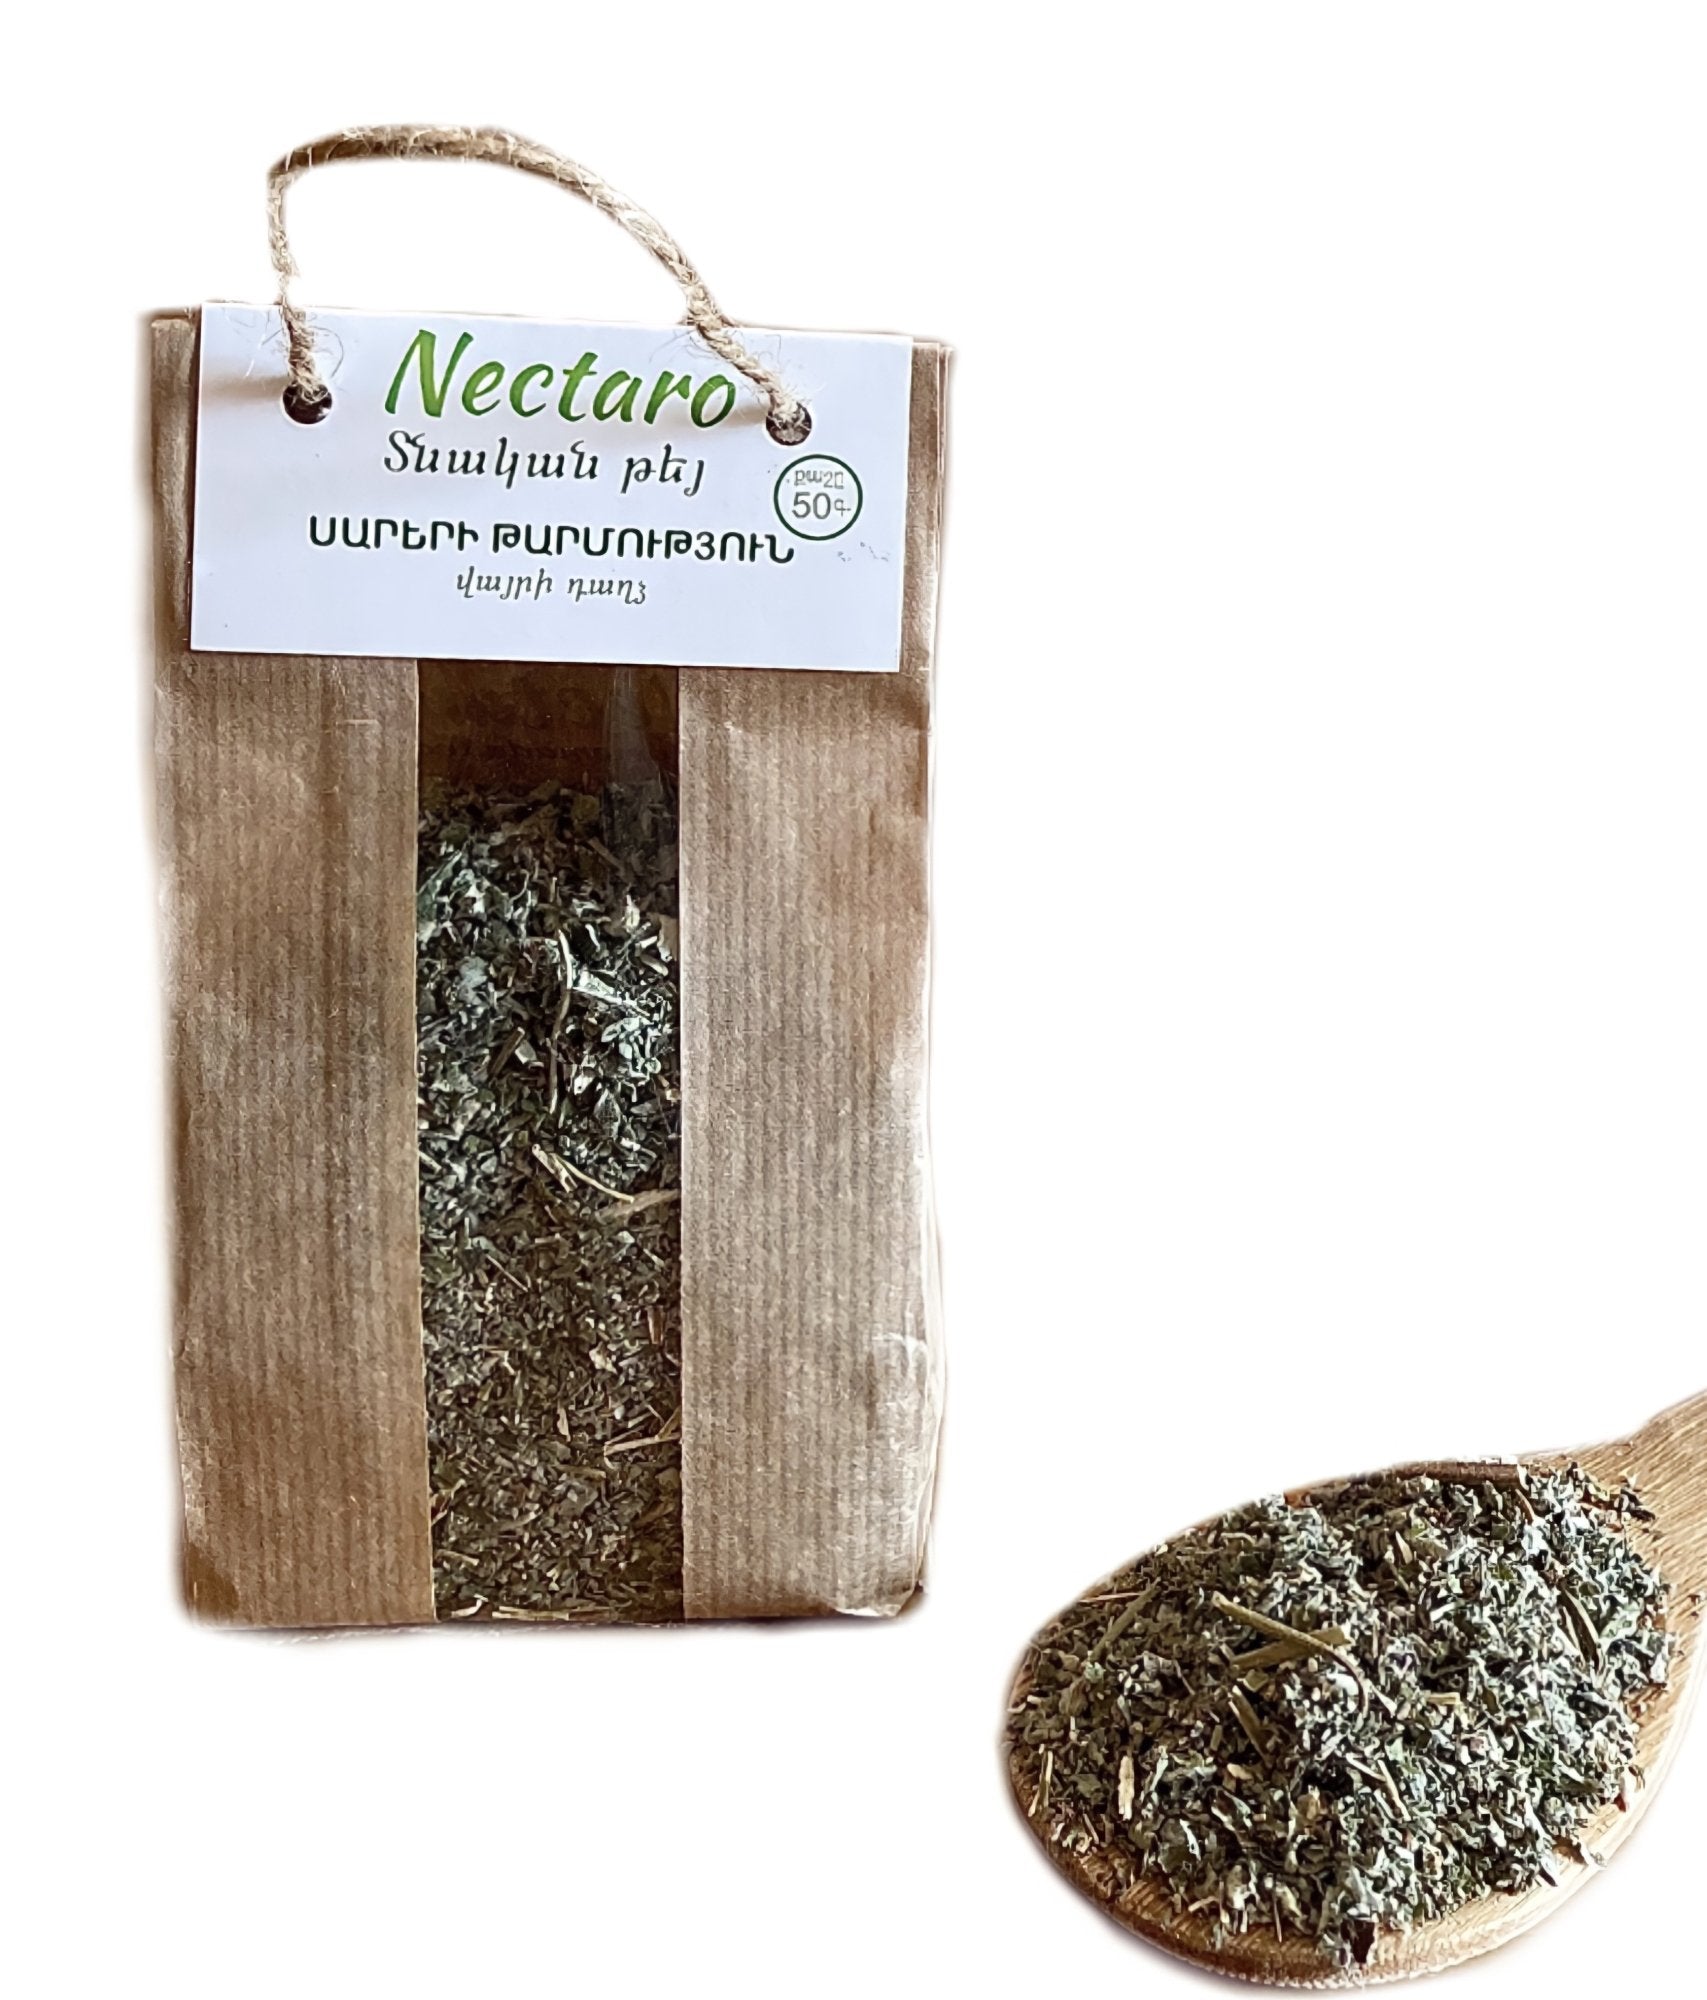 Nectaro Wild Mint Herbal Tea - Freshness of The Mountains - 50g